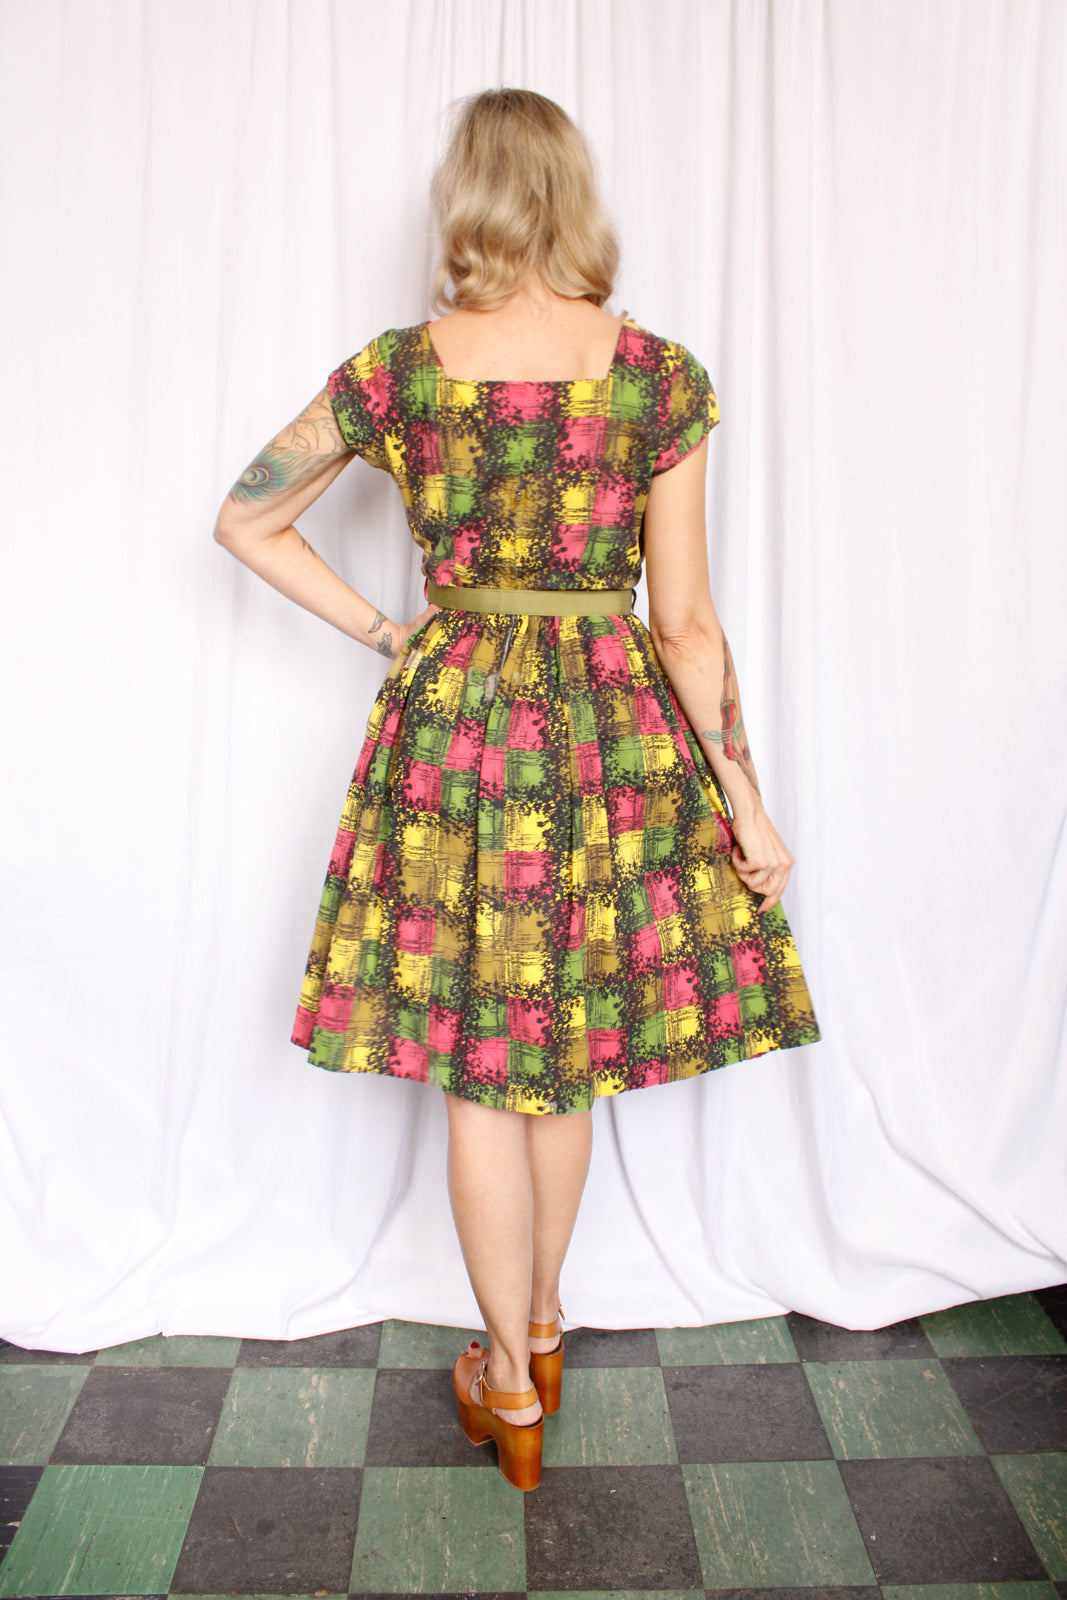 1950s Leading Lady Multicolor Plaid Dress - Medium